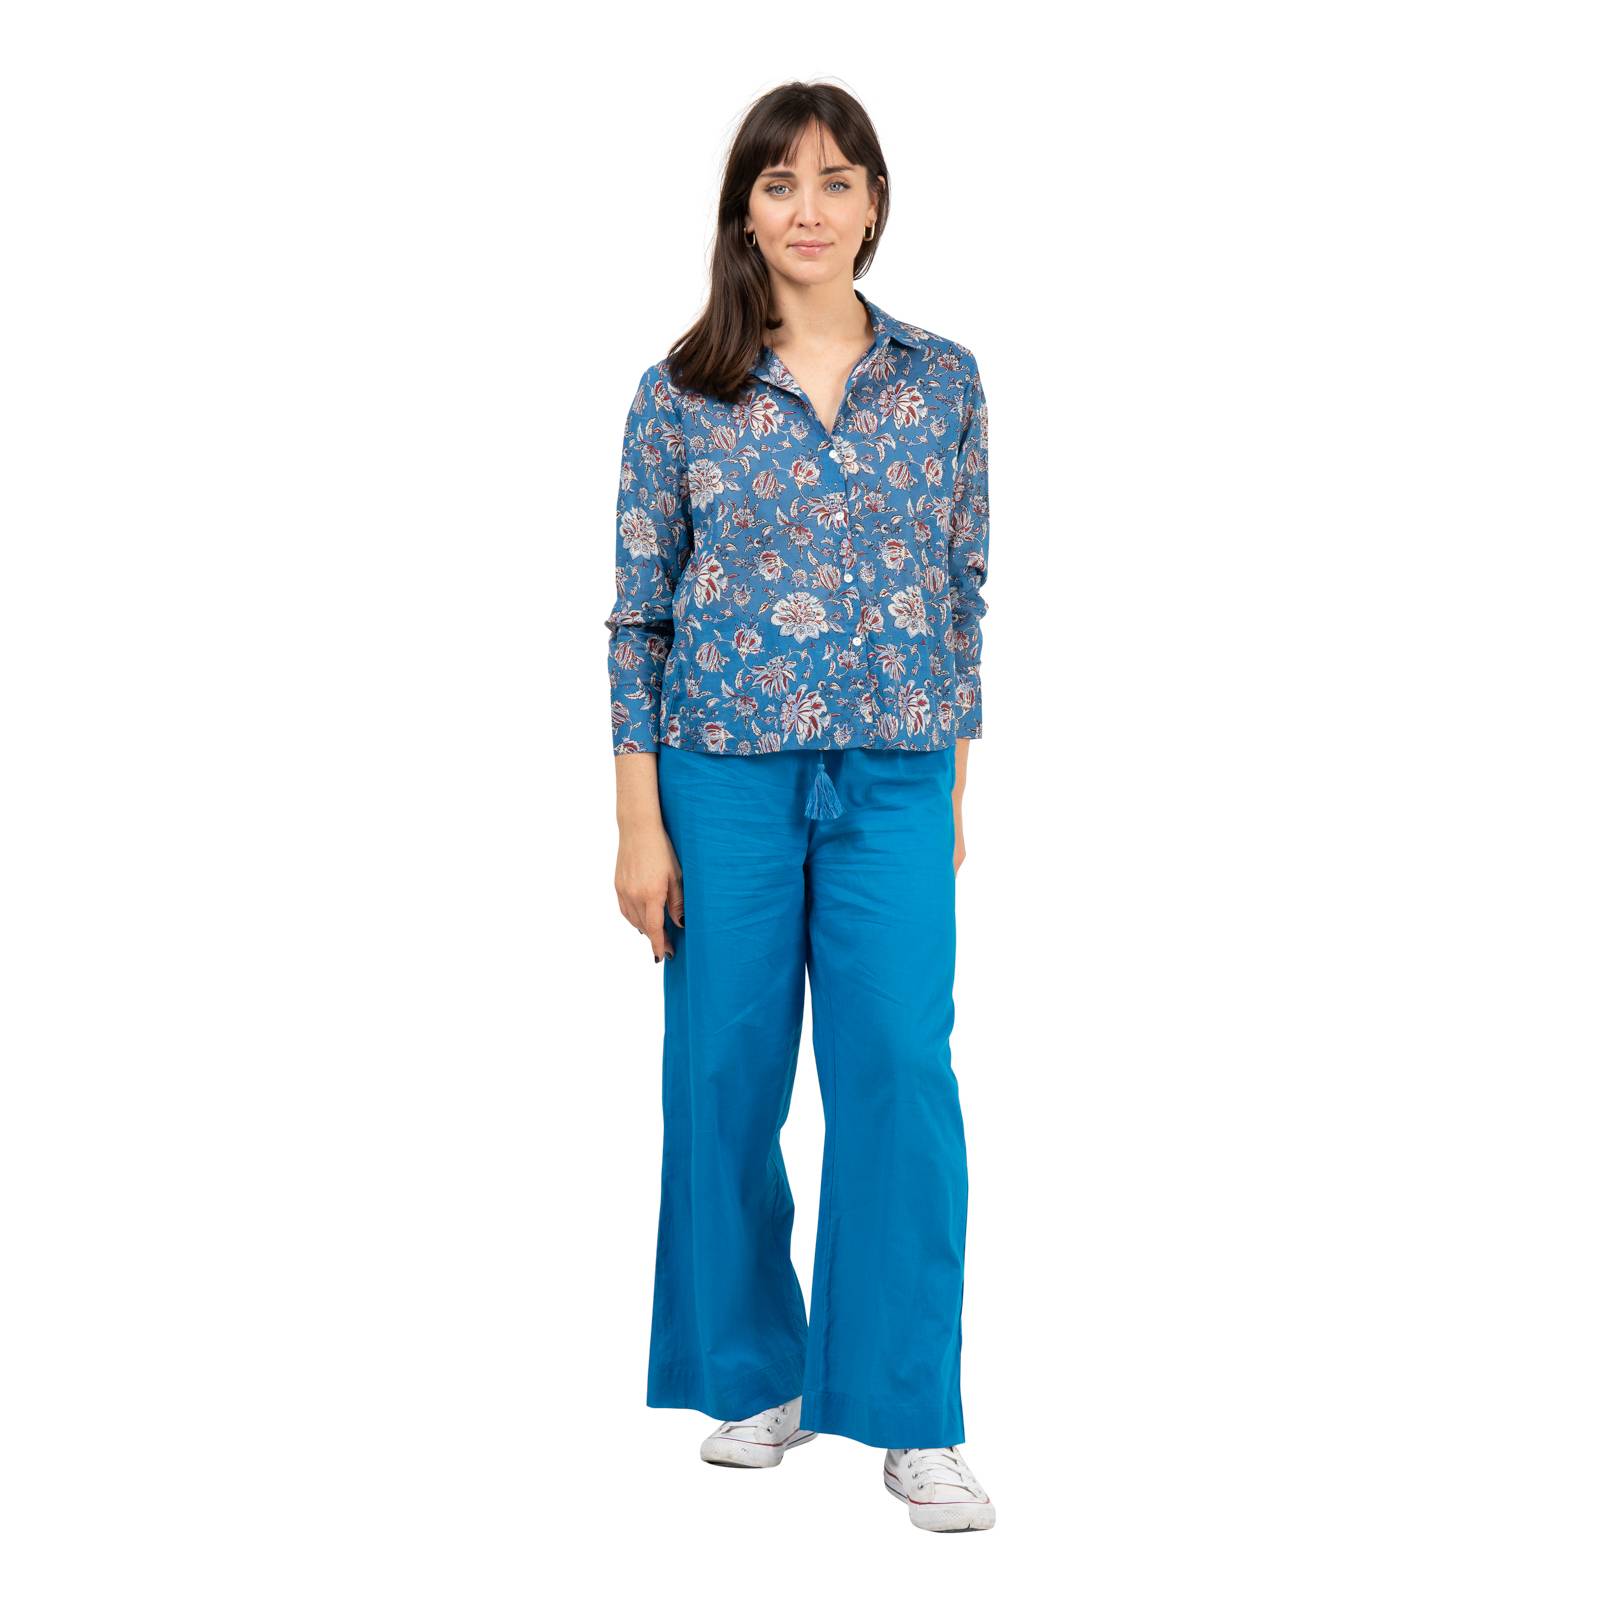 Chemises et blouses Chemise Alka Grace - 100% Coton Ethnique VT2151 BLUE CRUISE